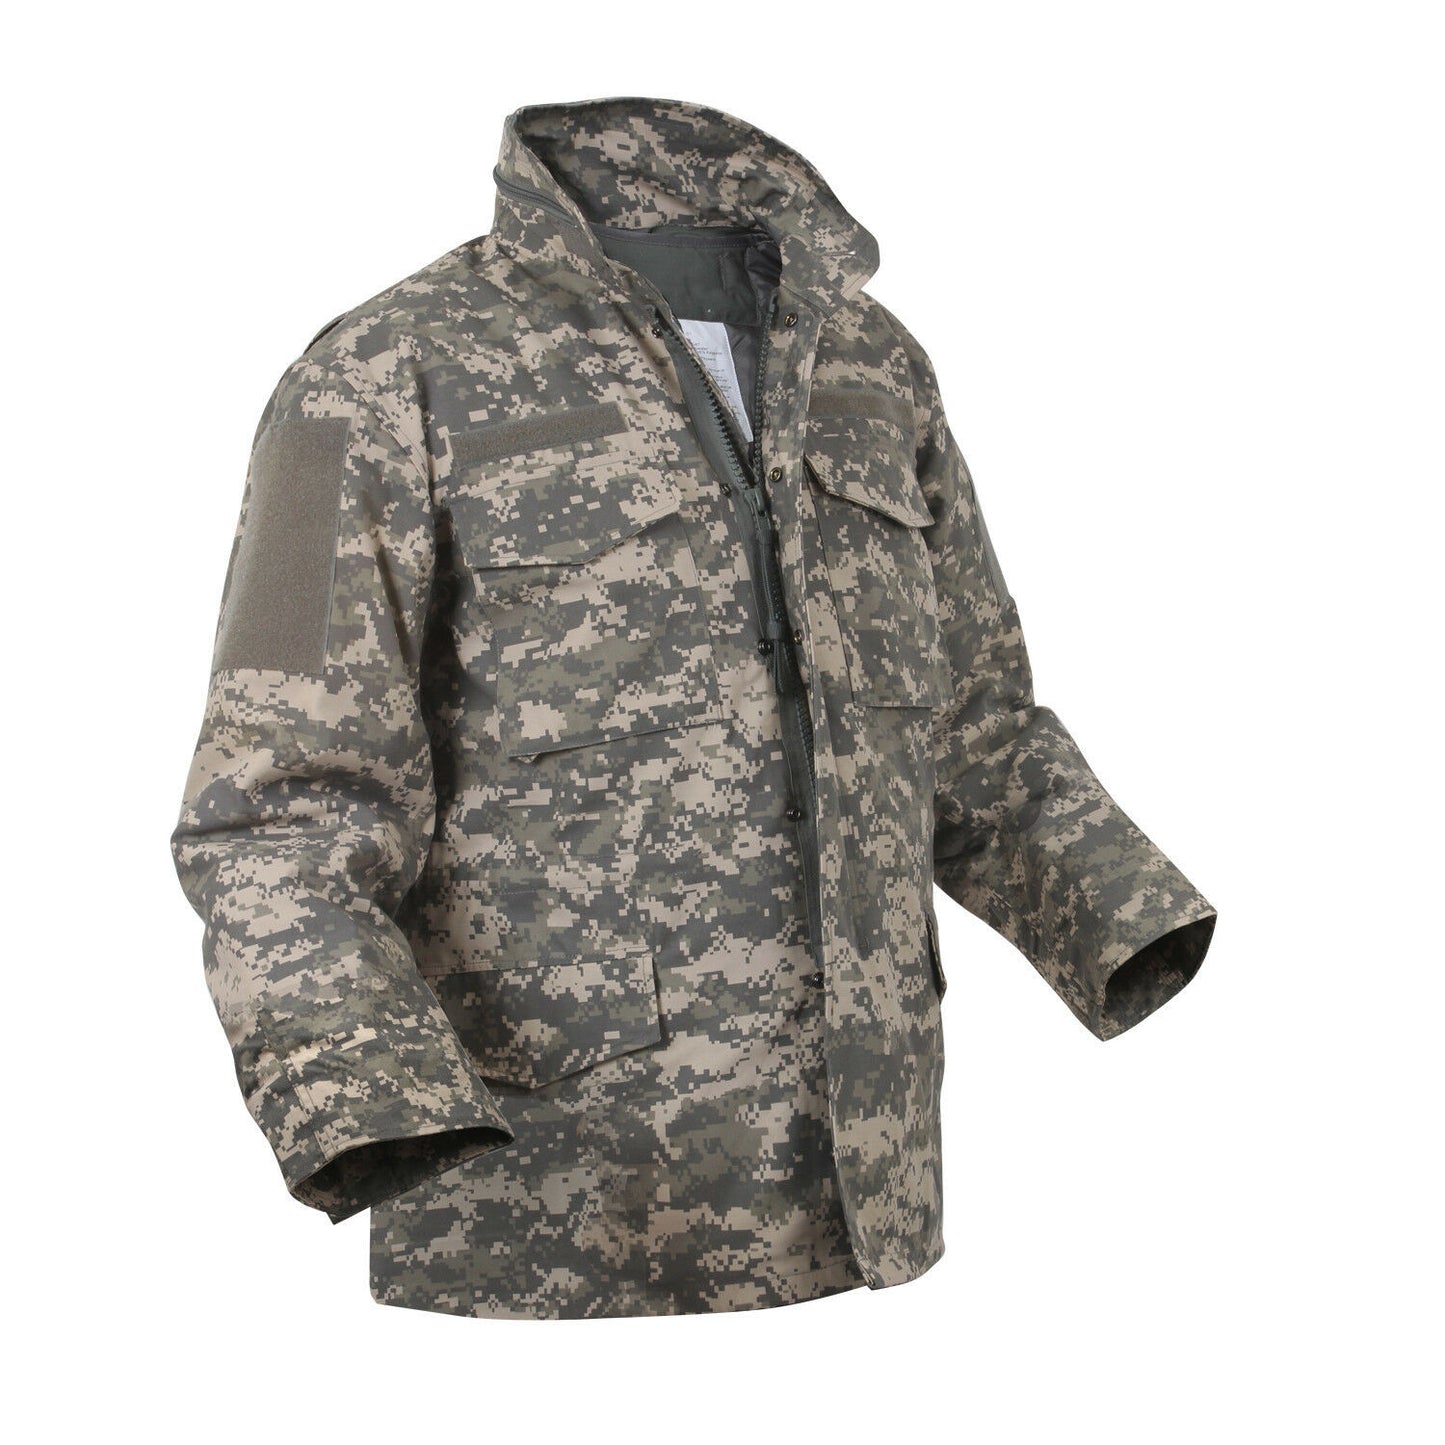 Rothco ACU Digital Camo M-65 Field Jacket